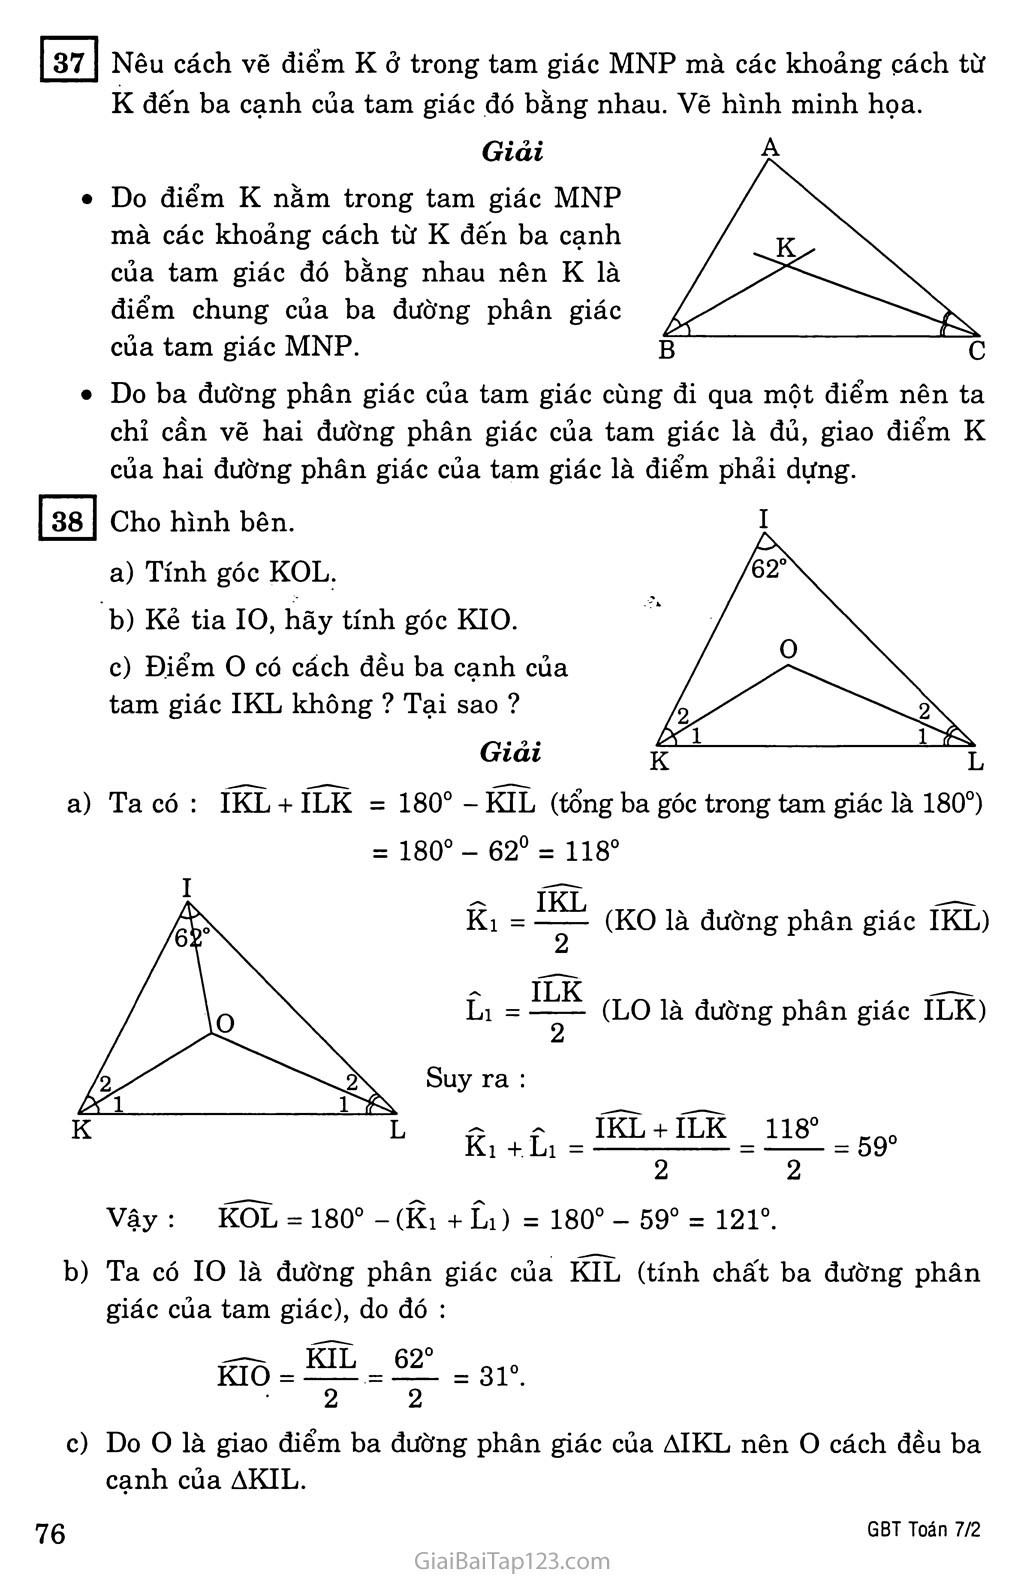 Bài 6. Tính chất ba đường phân giác của một tam giác trang 2